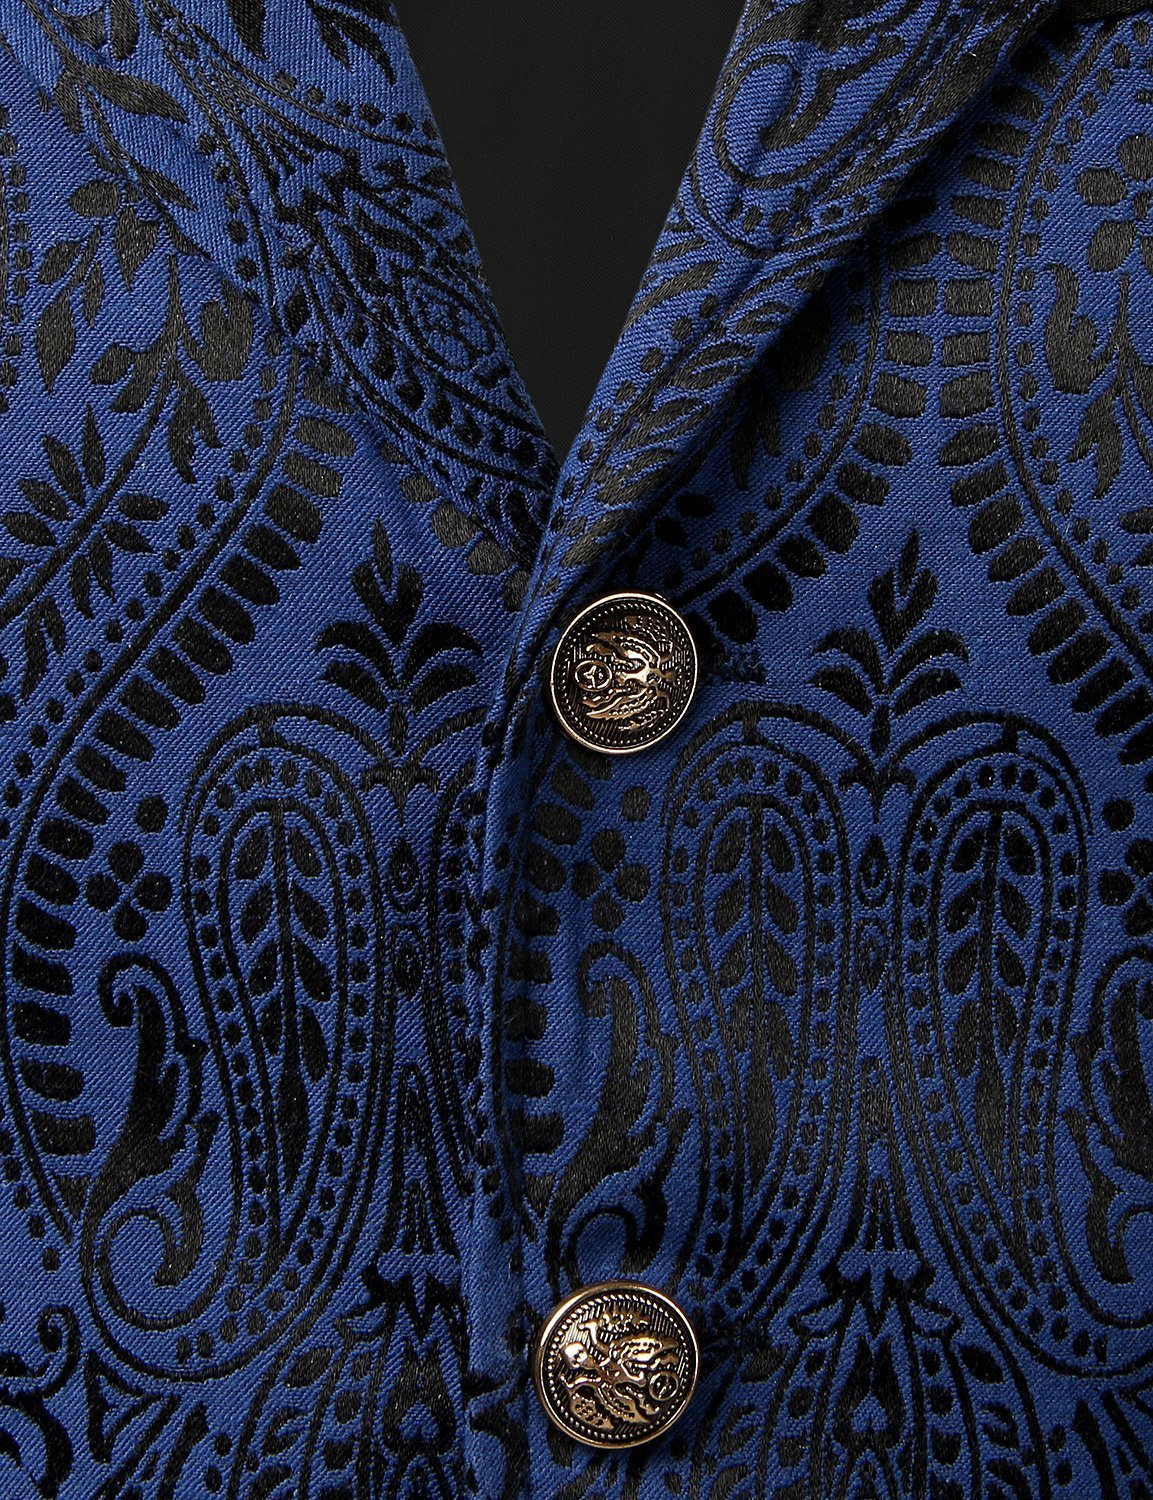 Men's Victorian Suit Vest Steampunk Gothic Waistcoat Vintage Paisley F ...